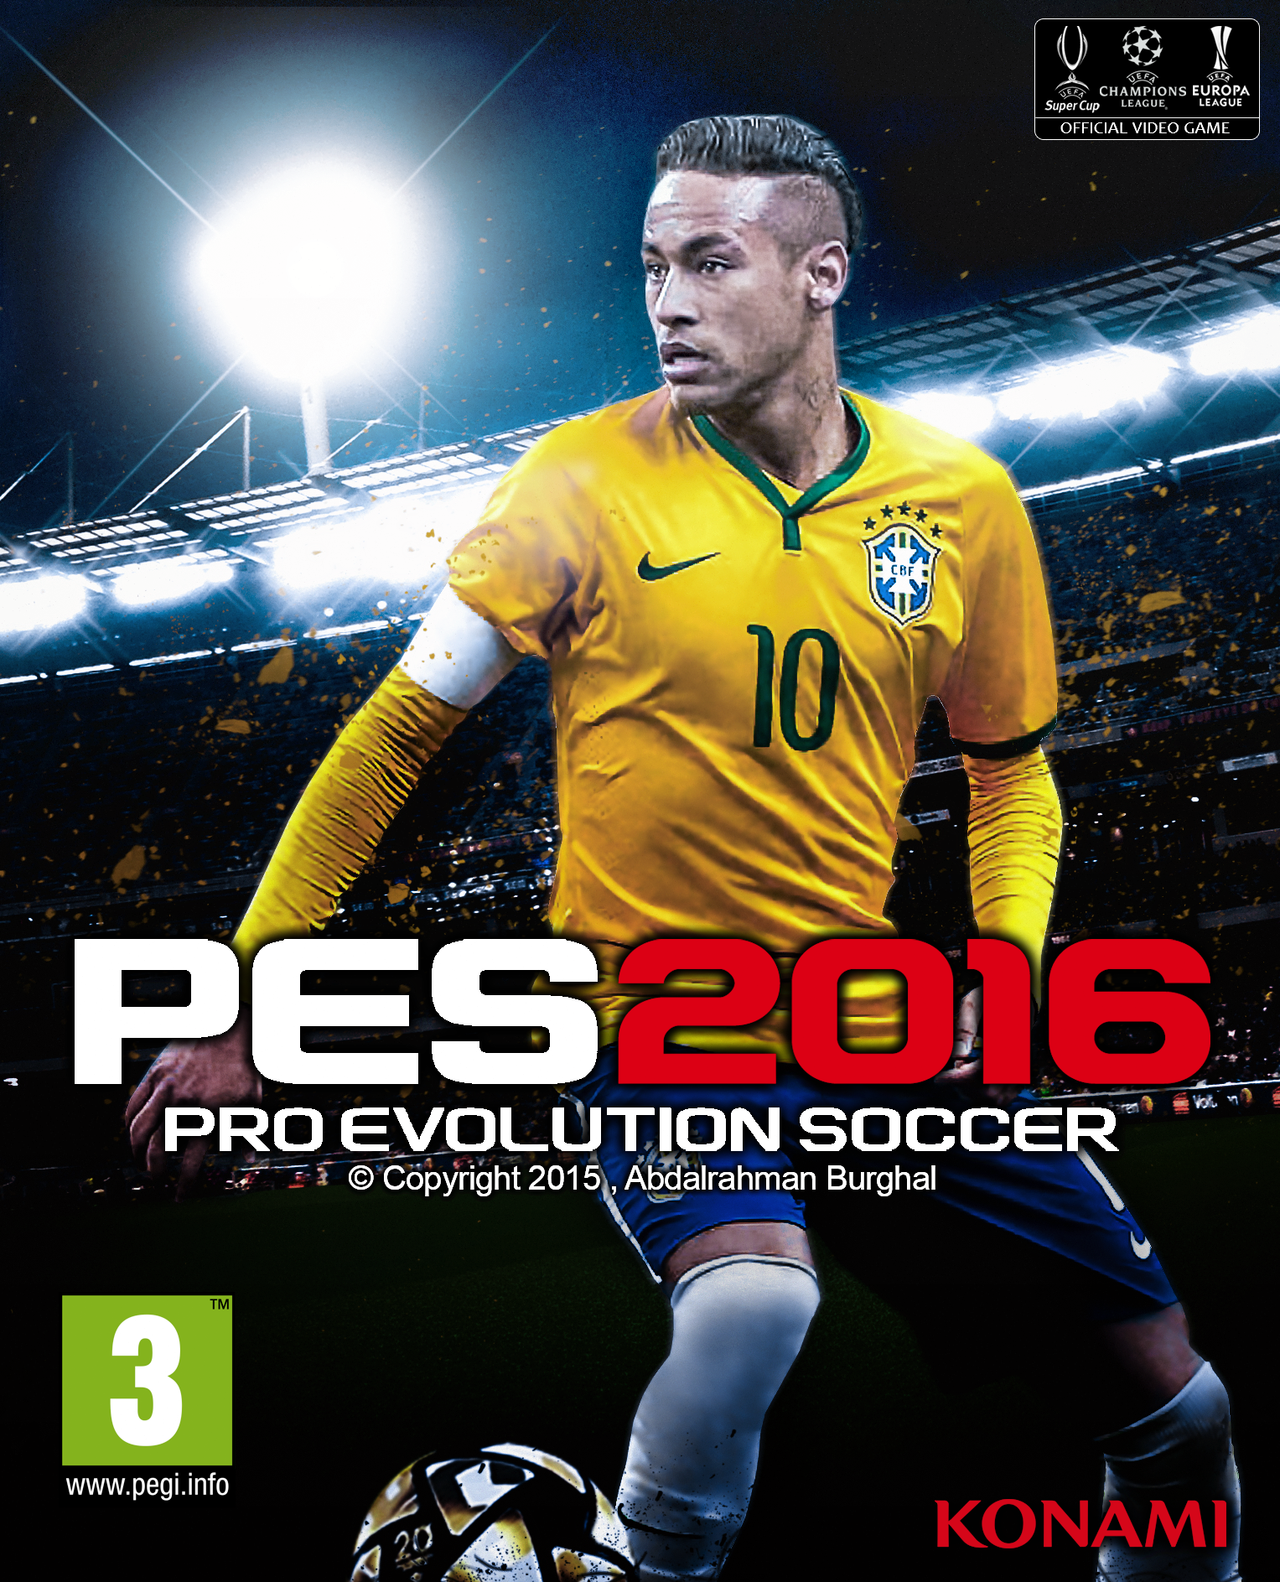 Pro Evolution Soccer 2016 Free Download Torrent